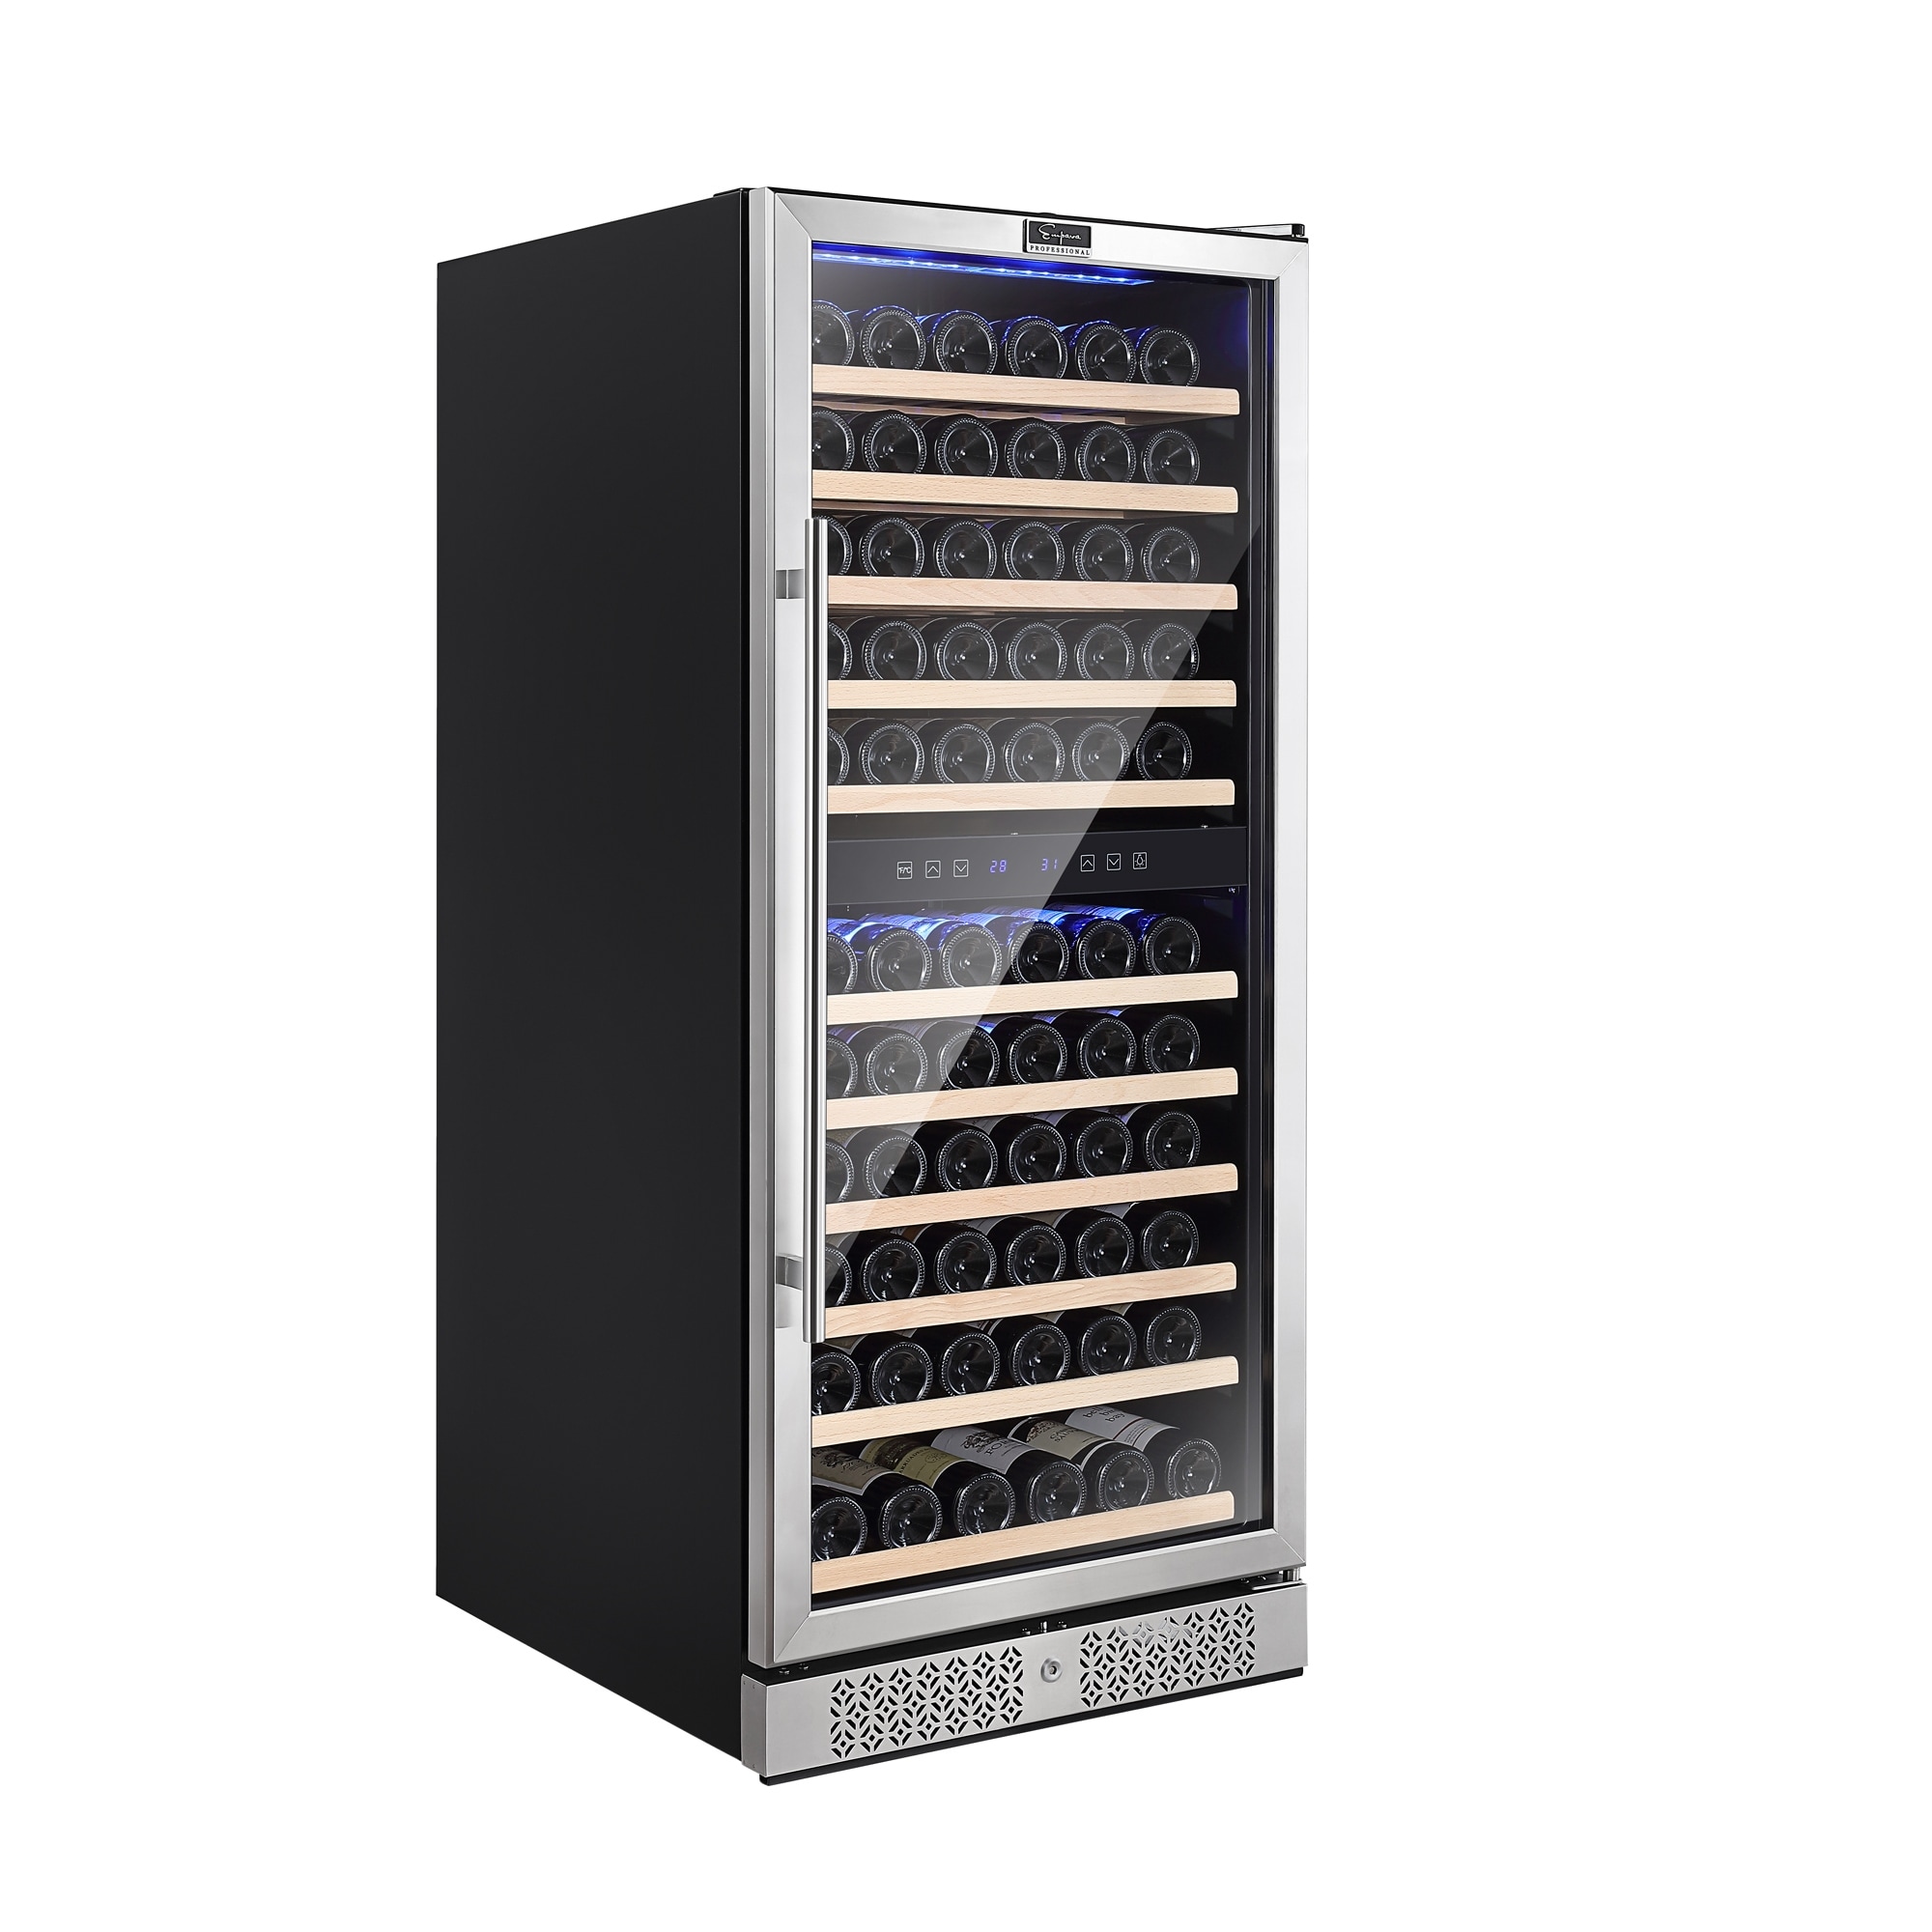 Ivation 24-Bottle Compressor Freestanding Wine Cooler Refrigerator - Black